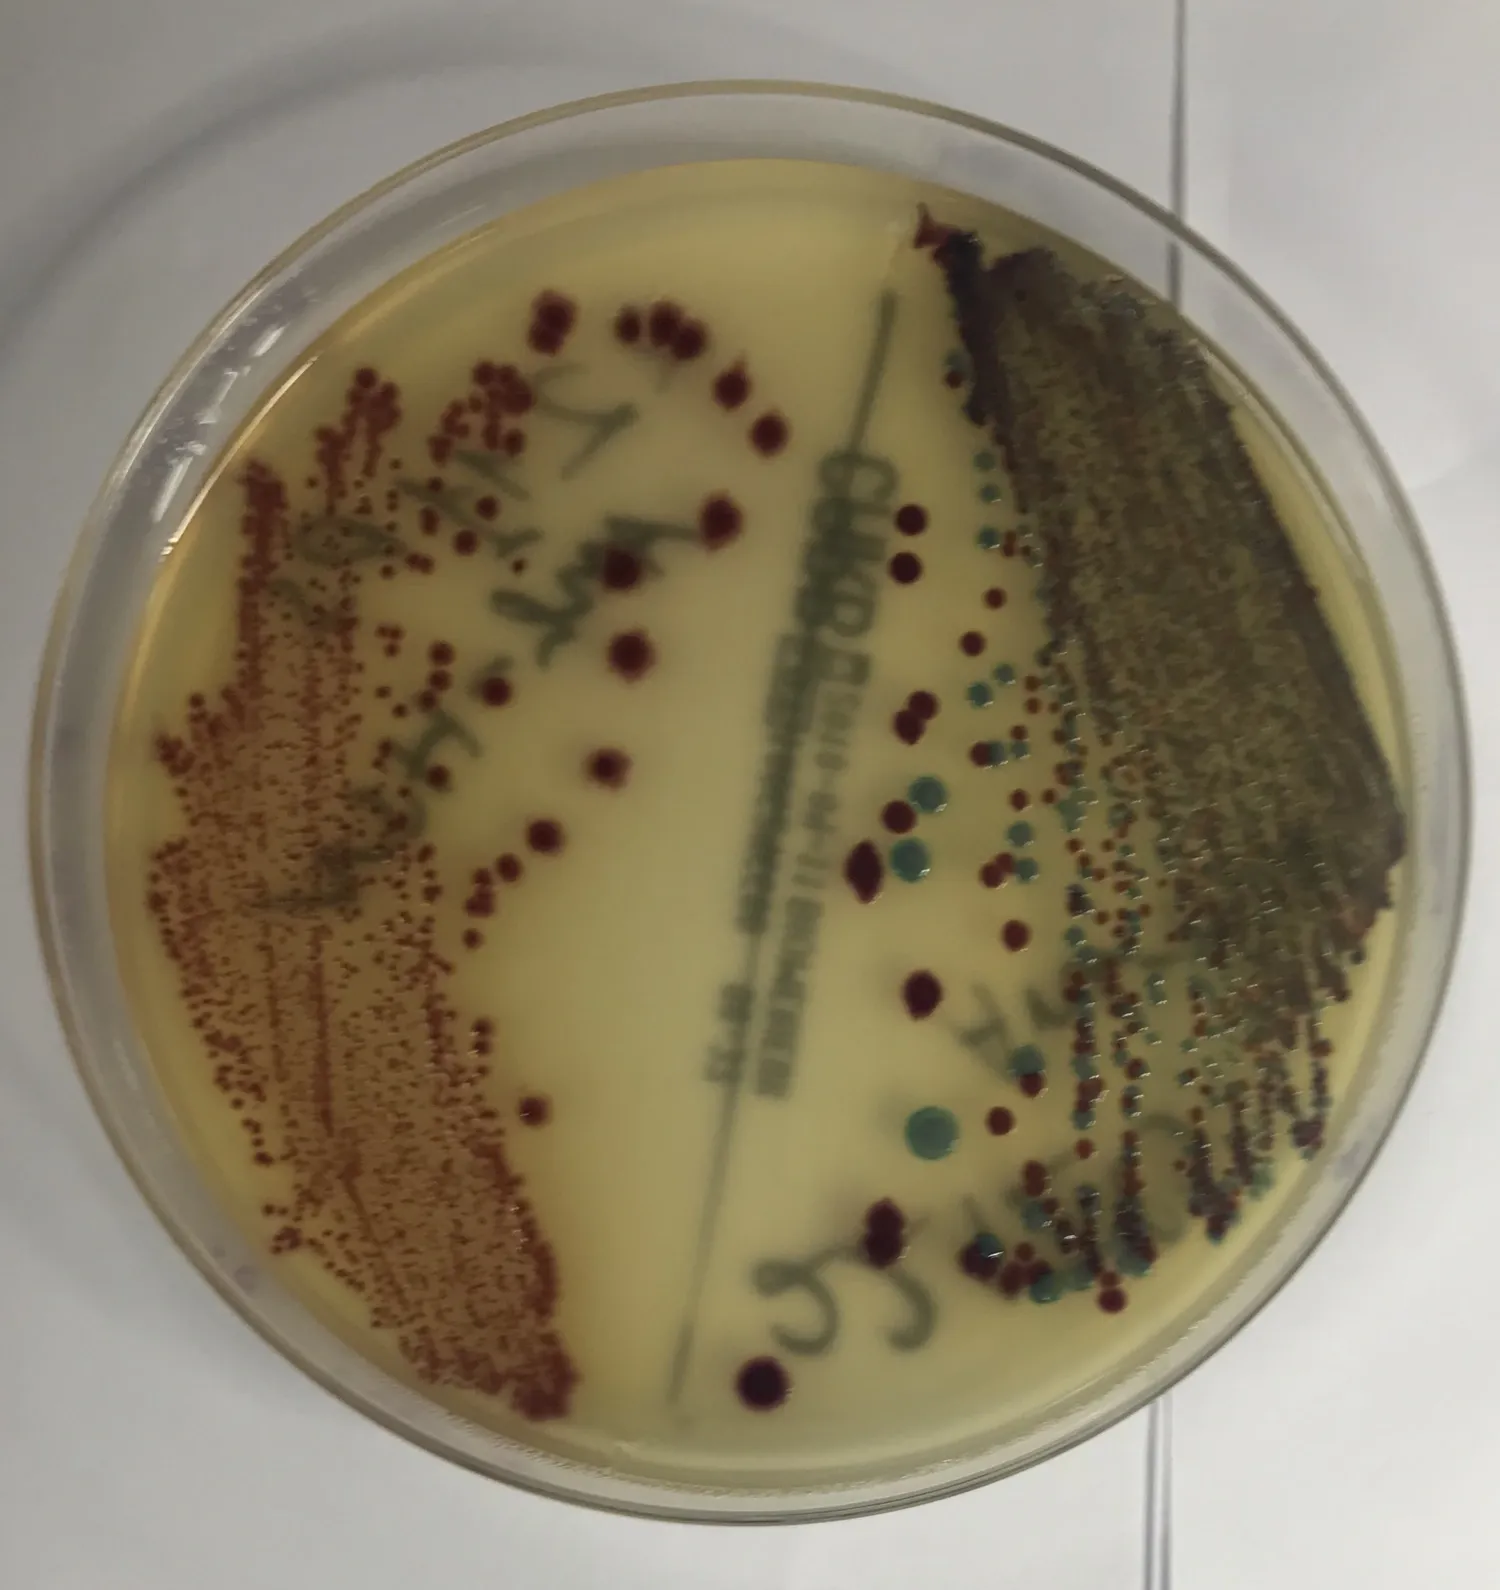 Ett odling av CRE bakterier i en platta.